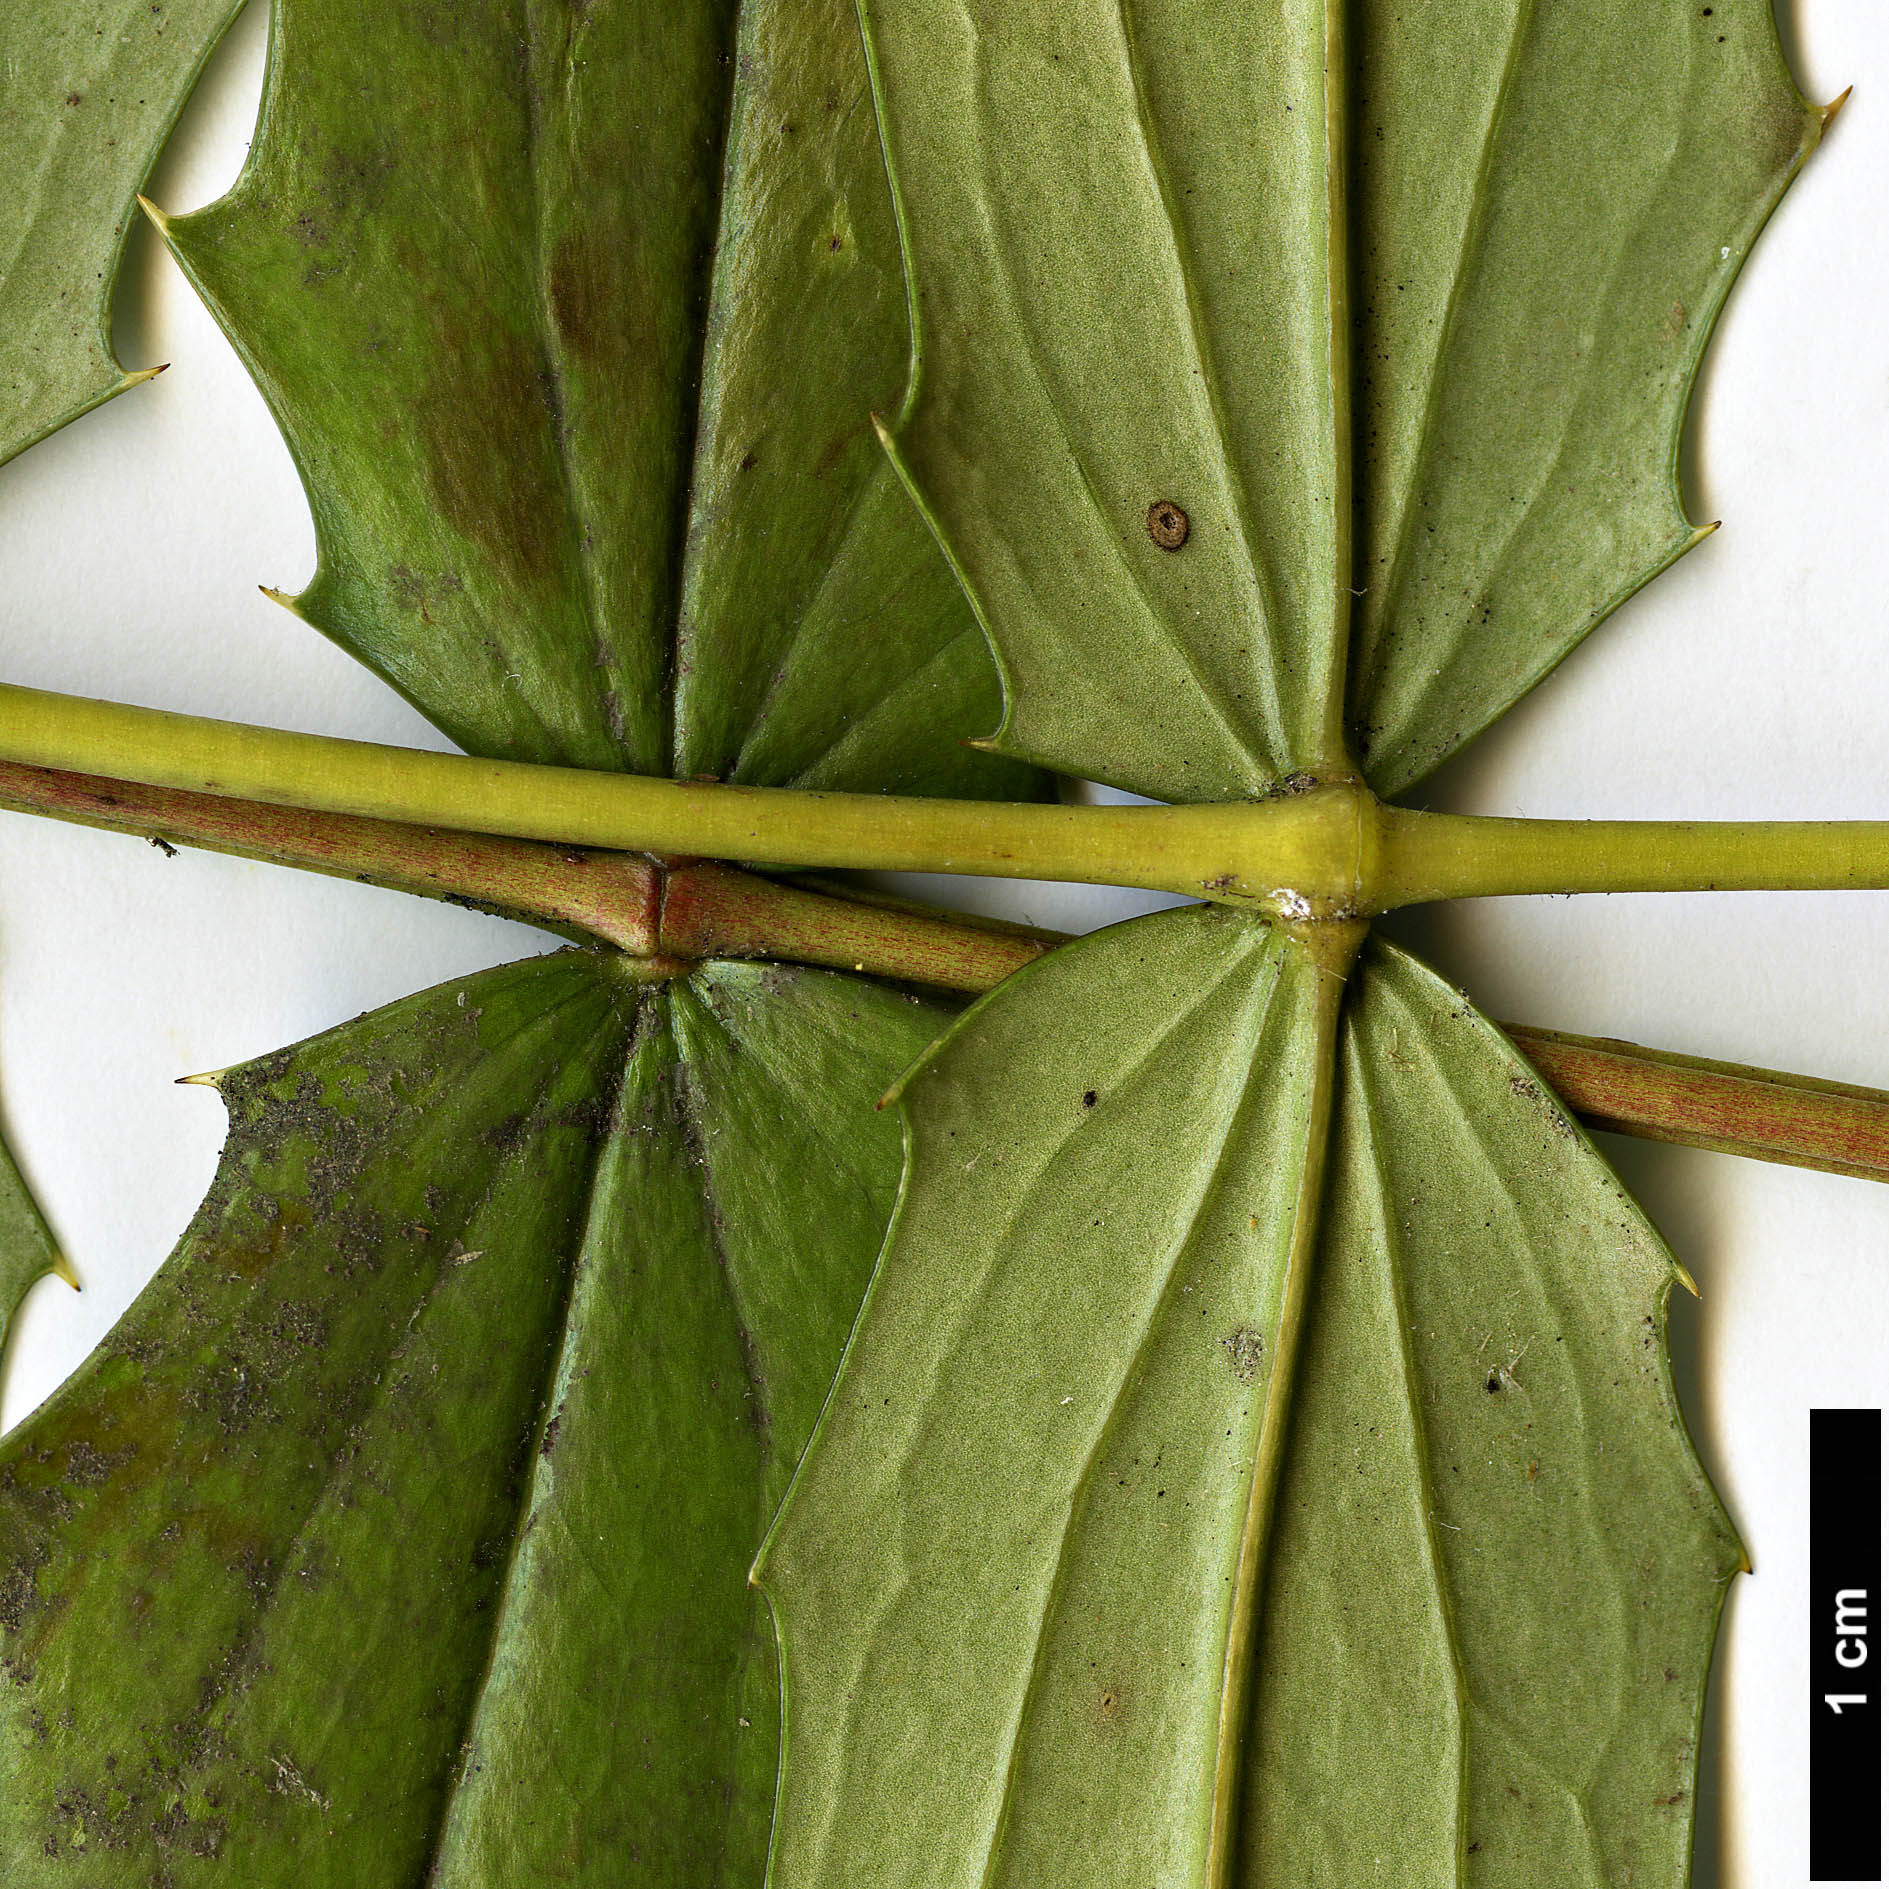 High resolution image: Family: Berberidaceae - Genus: Mahonia - Taxon: huiliensis